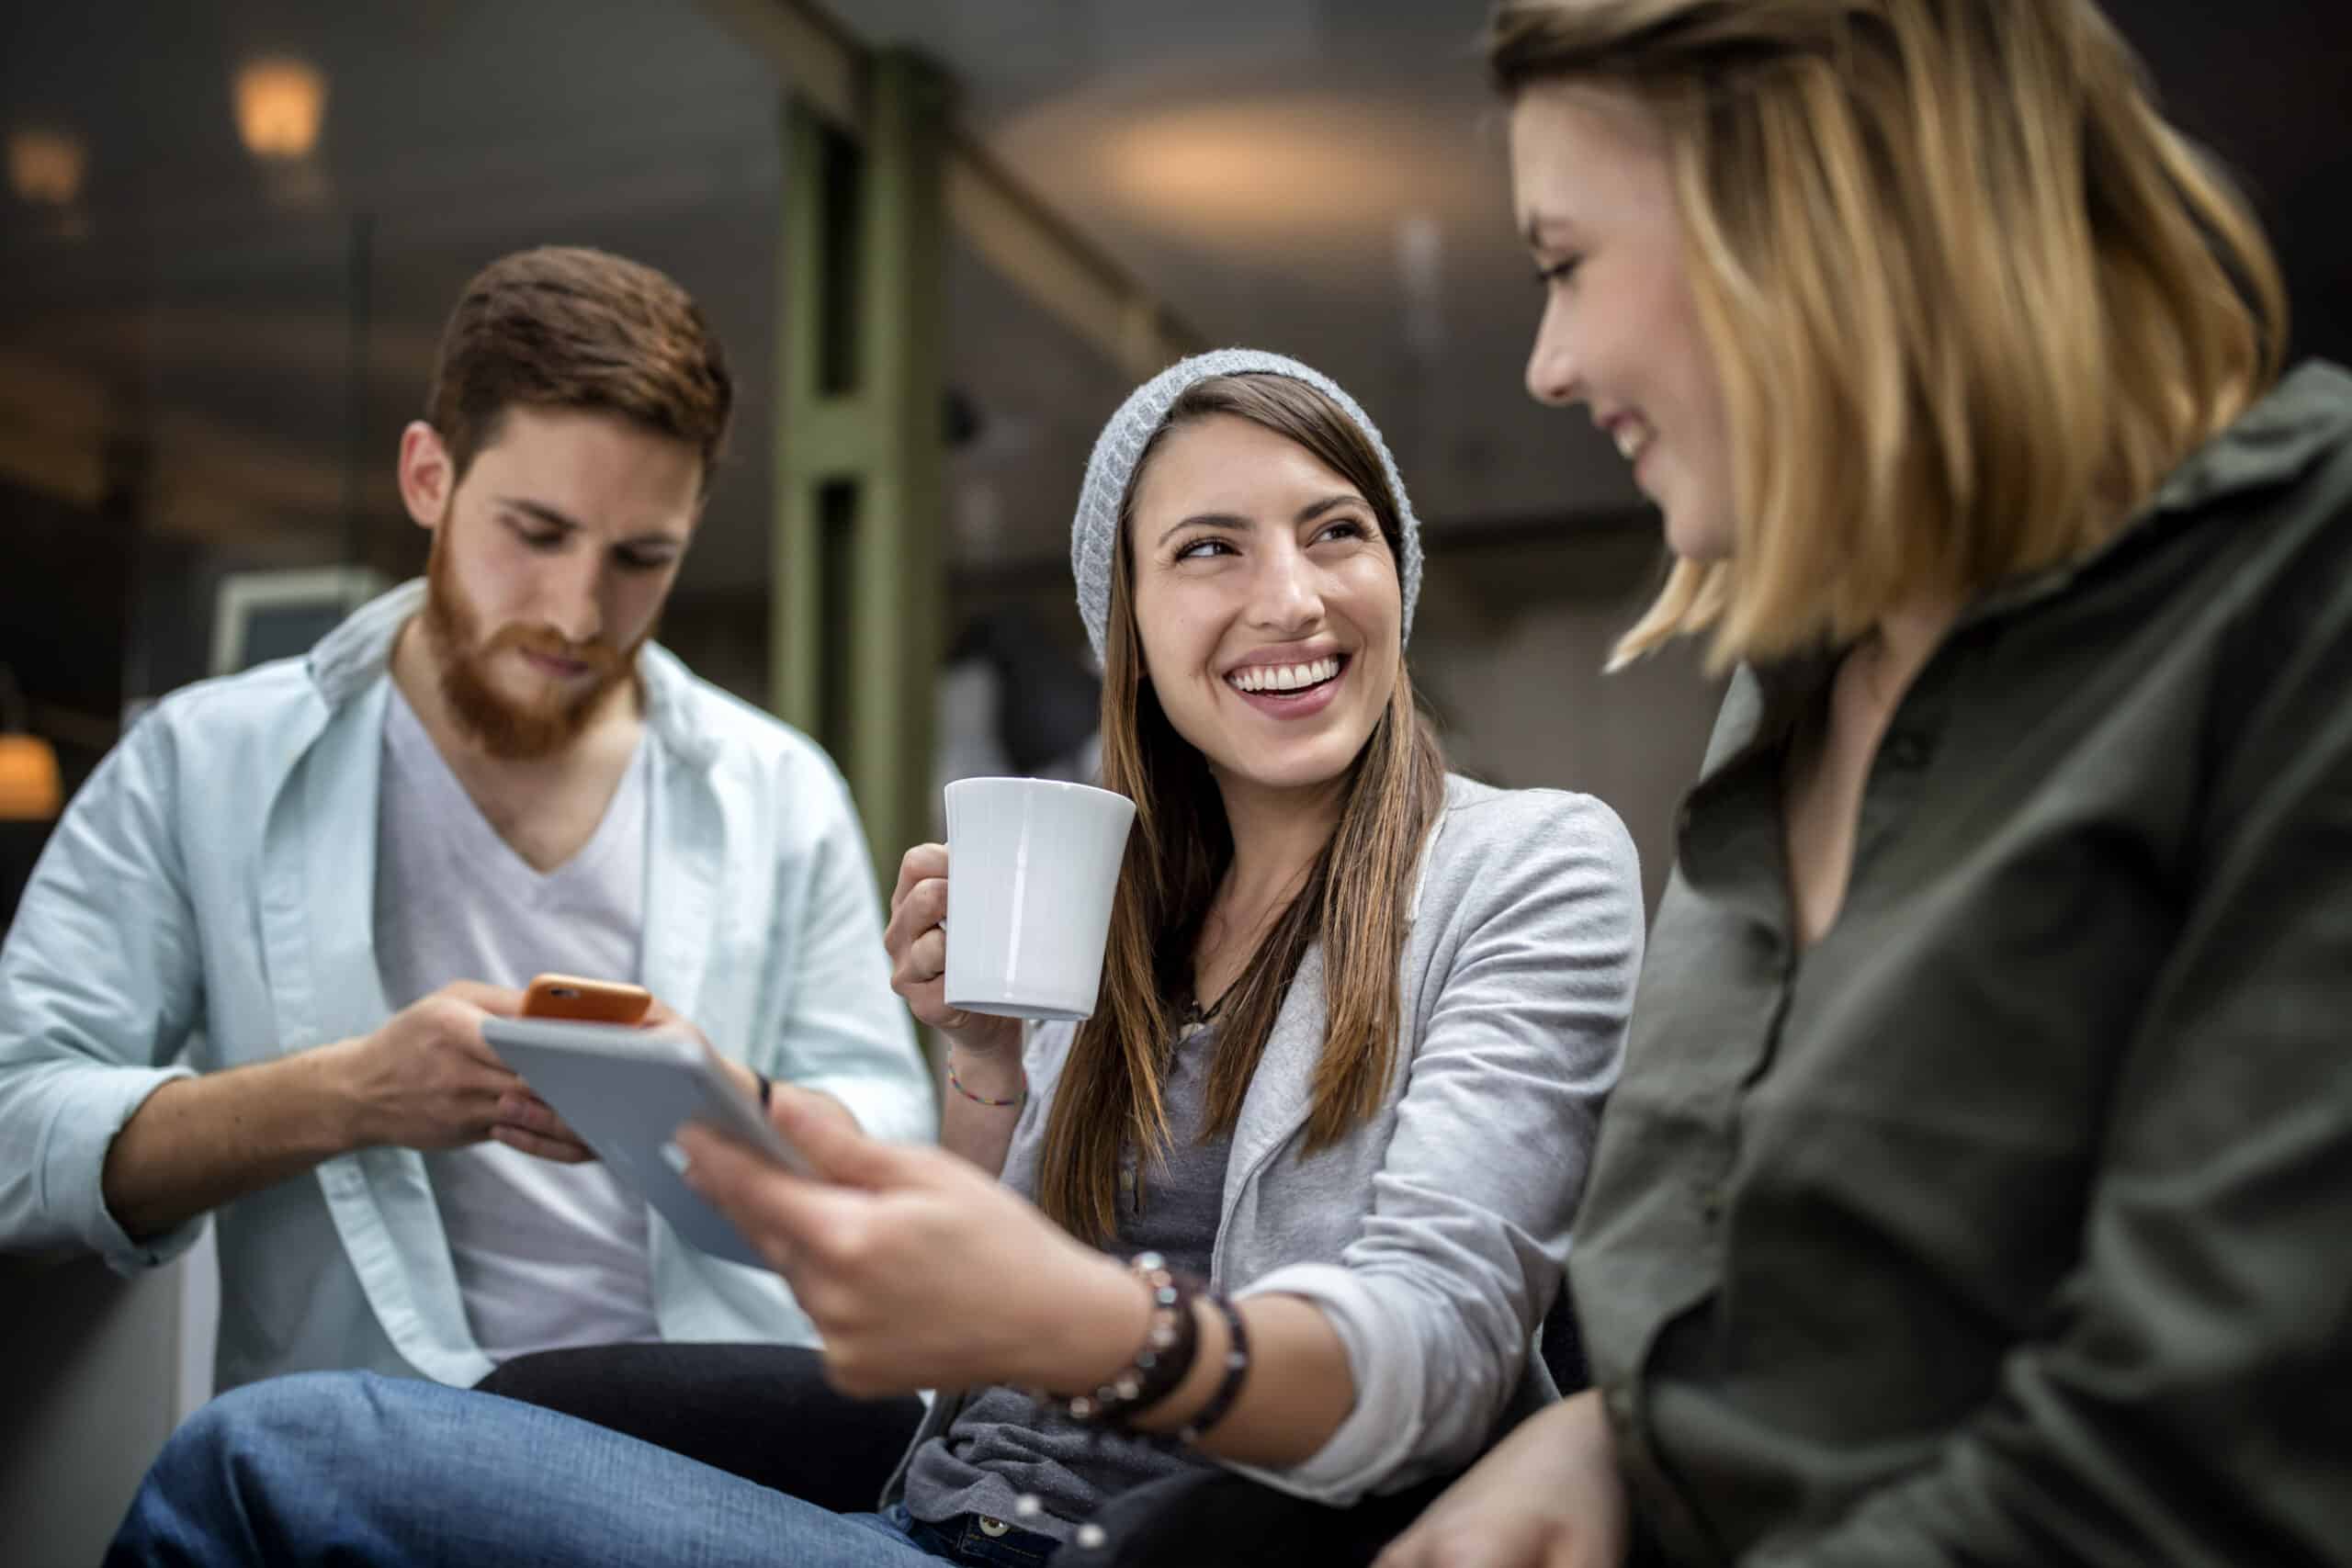 Drei Freunde genießen die gemeinsame Zeit in gemütlicher Atmosphäre; ein Mann ist auf sein Smartphone konzentriert, während zwei Frauen, eine davon mit einer Kaffeetasse in der Hand, lachen und angeregt plaudern. © Fotografie Tomas Rodriguez